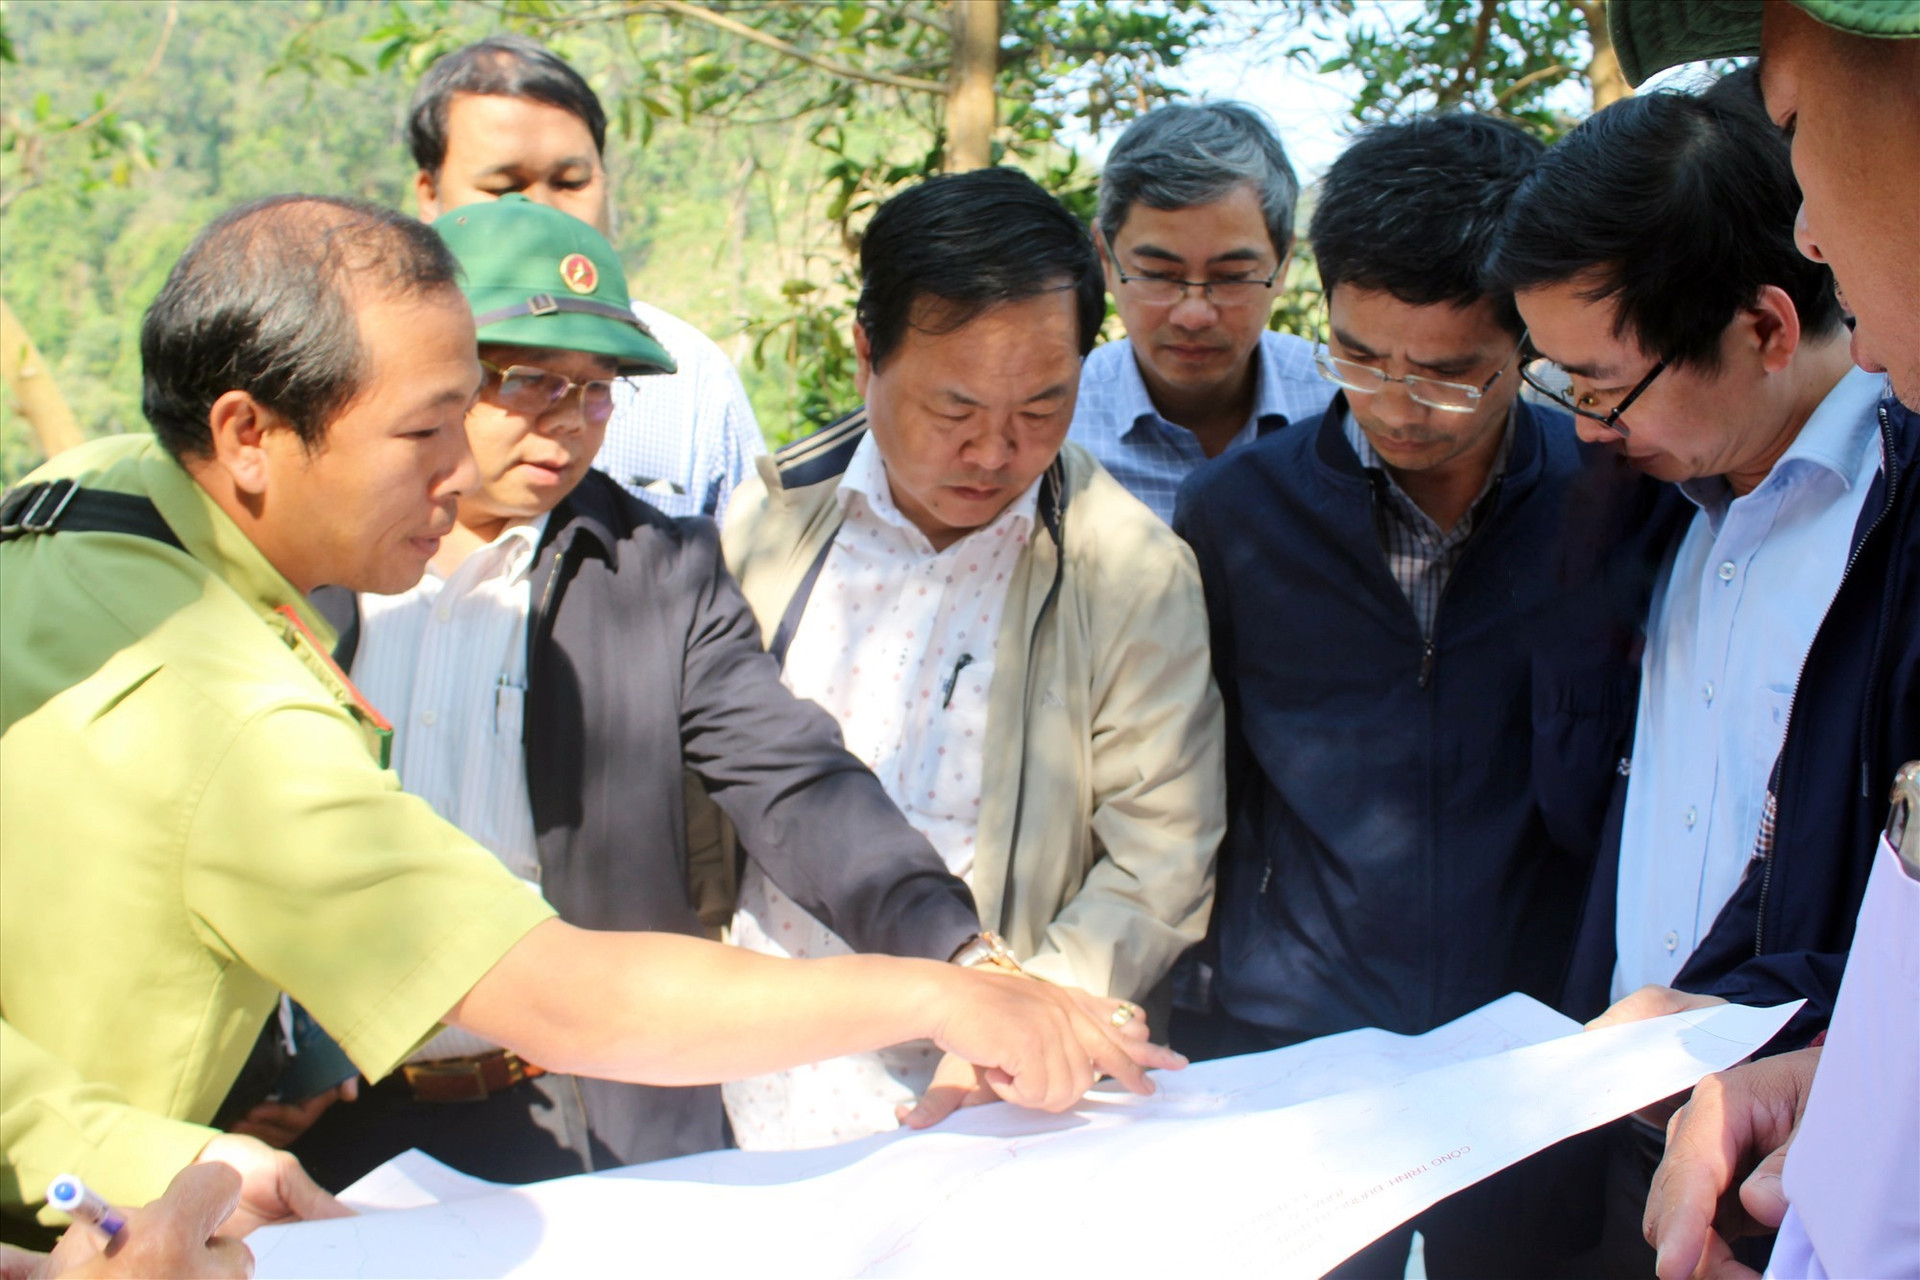 Phó Chủ tịch UBND tỉnh Nguyễn Hồng Quang (ở chính giữa áo khoác vàng) kiểm tra tuyến đường trên bản đồ.